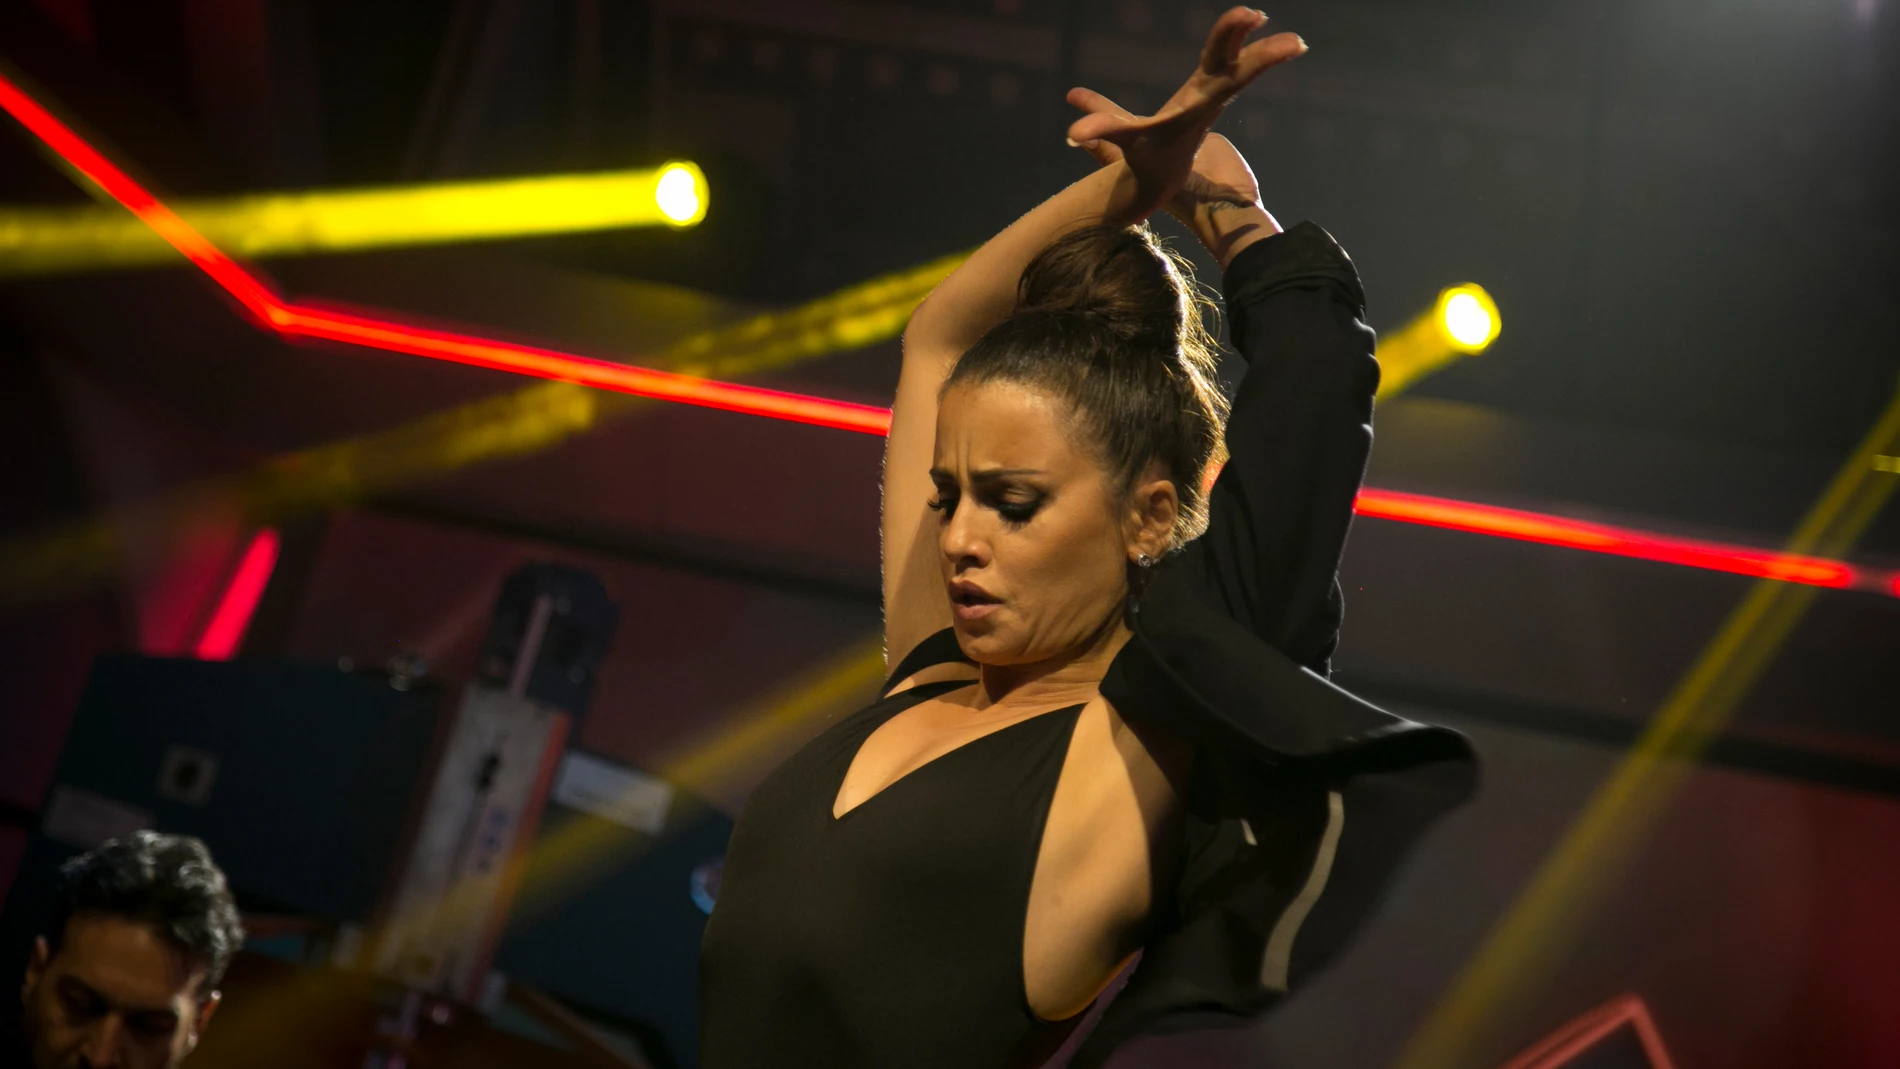 Una emocionada Mónica Cruz nos deja sin palabras con un espectacular baile flamenco en 'El Hormiguero 3.0'